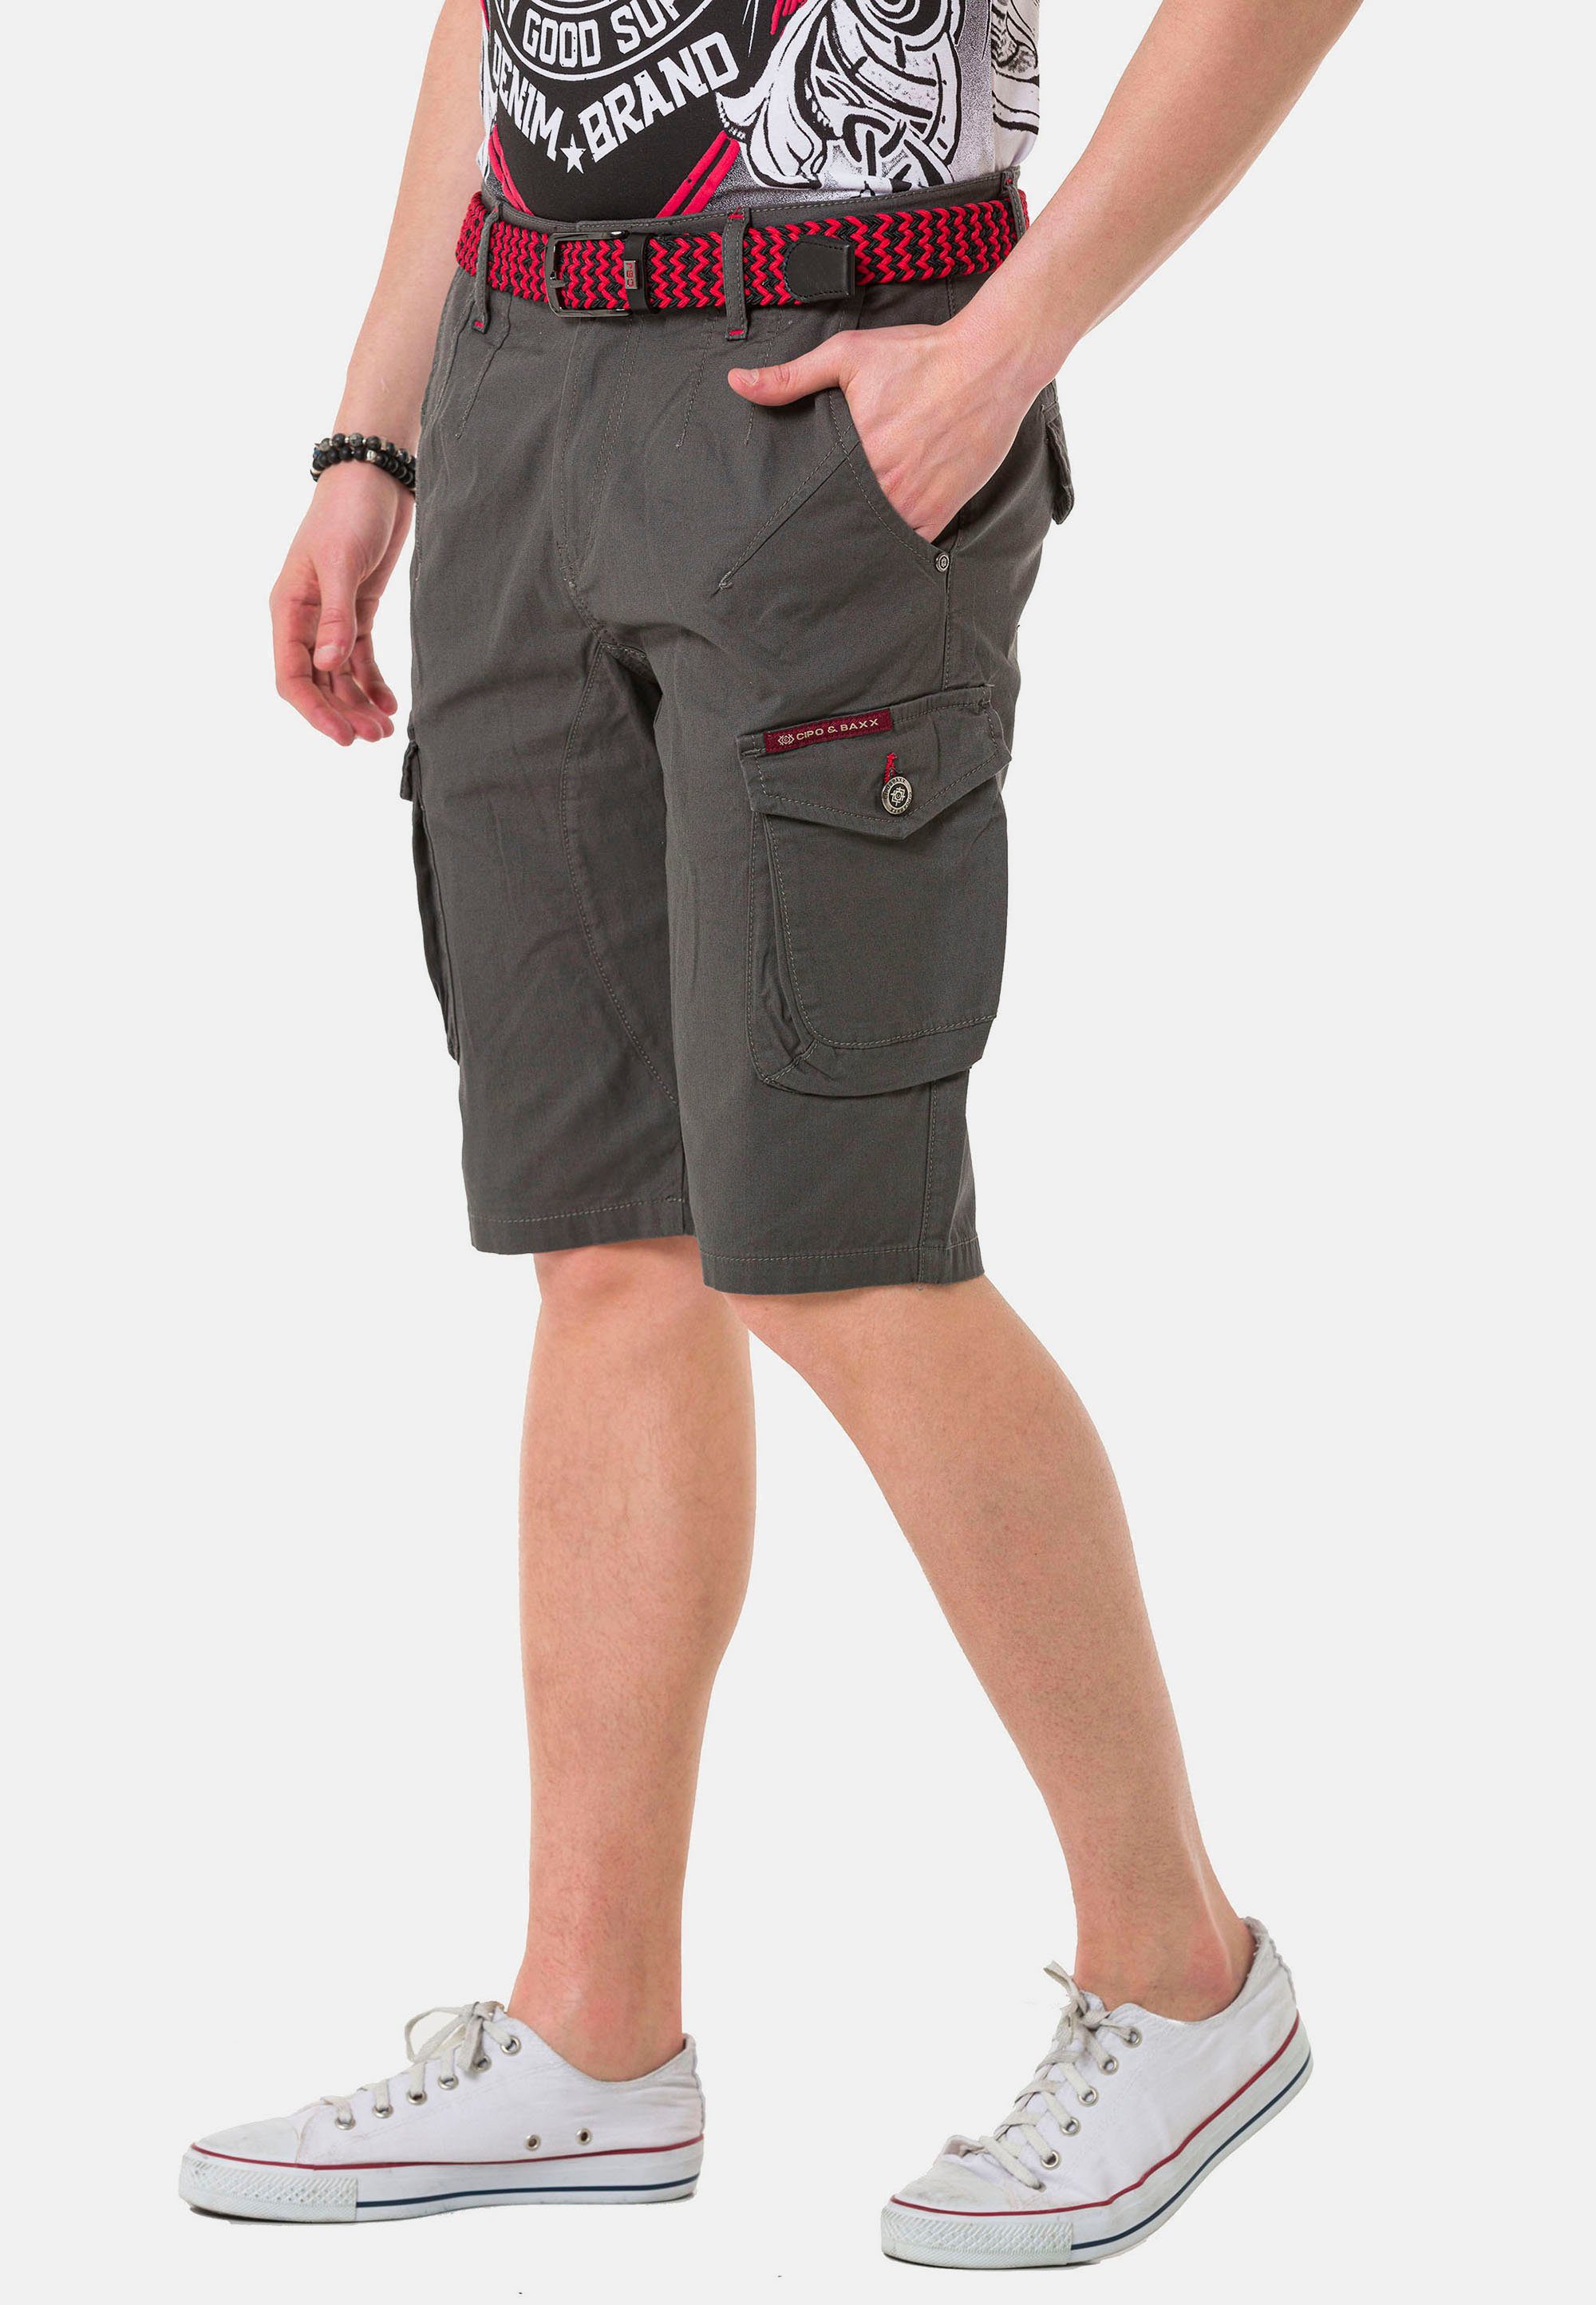 grau Cipo Shorts & Baxx praktischen mit Cargotaschen